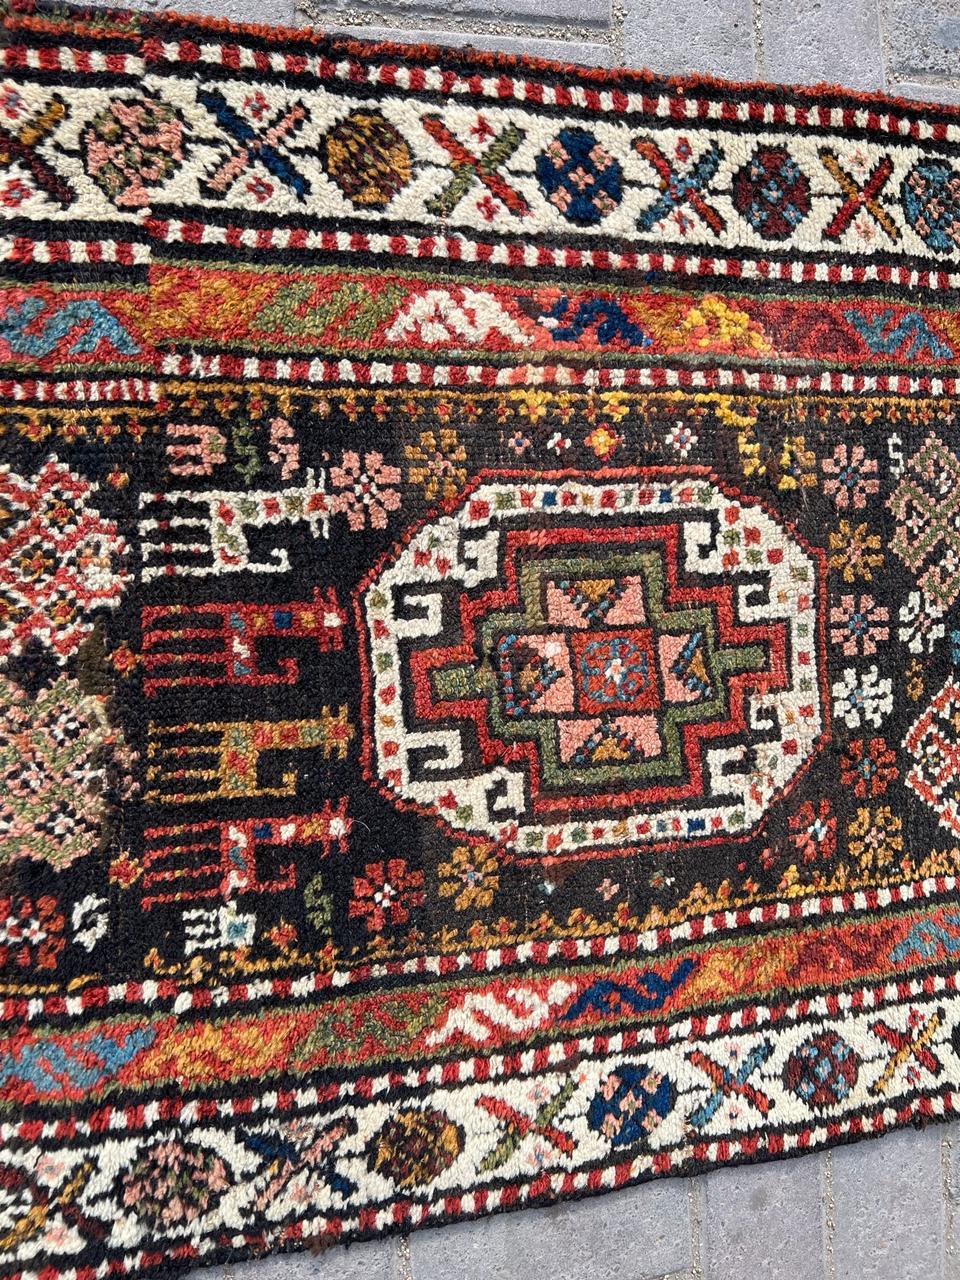 Laissez-vous séduire par l'attrait de l'héritage persan avec ce tapis de course persan kurde ancien, fait à la main, datant des années 1900. Mesurant 2,5 pieds de largeur et 11,8 pieds de longueur (76 cm x 359 cm), ce remarquable tapis de course est